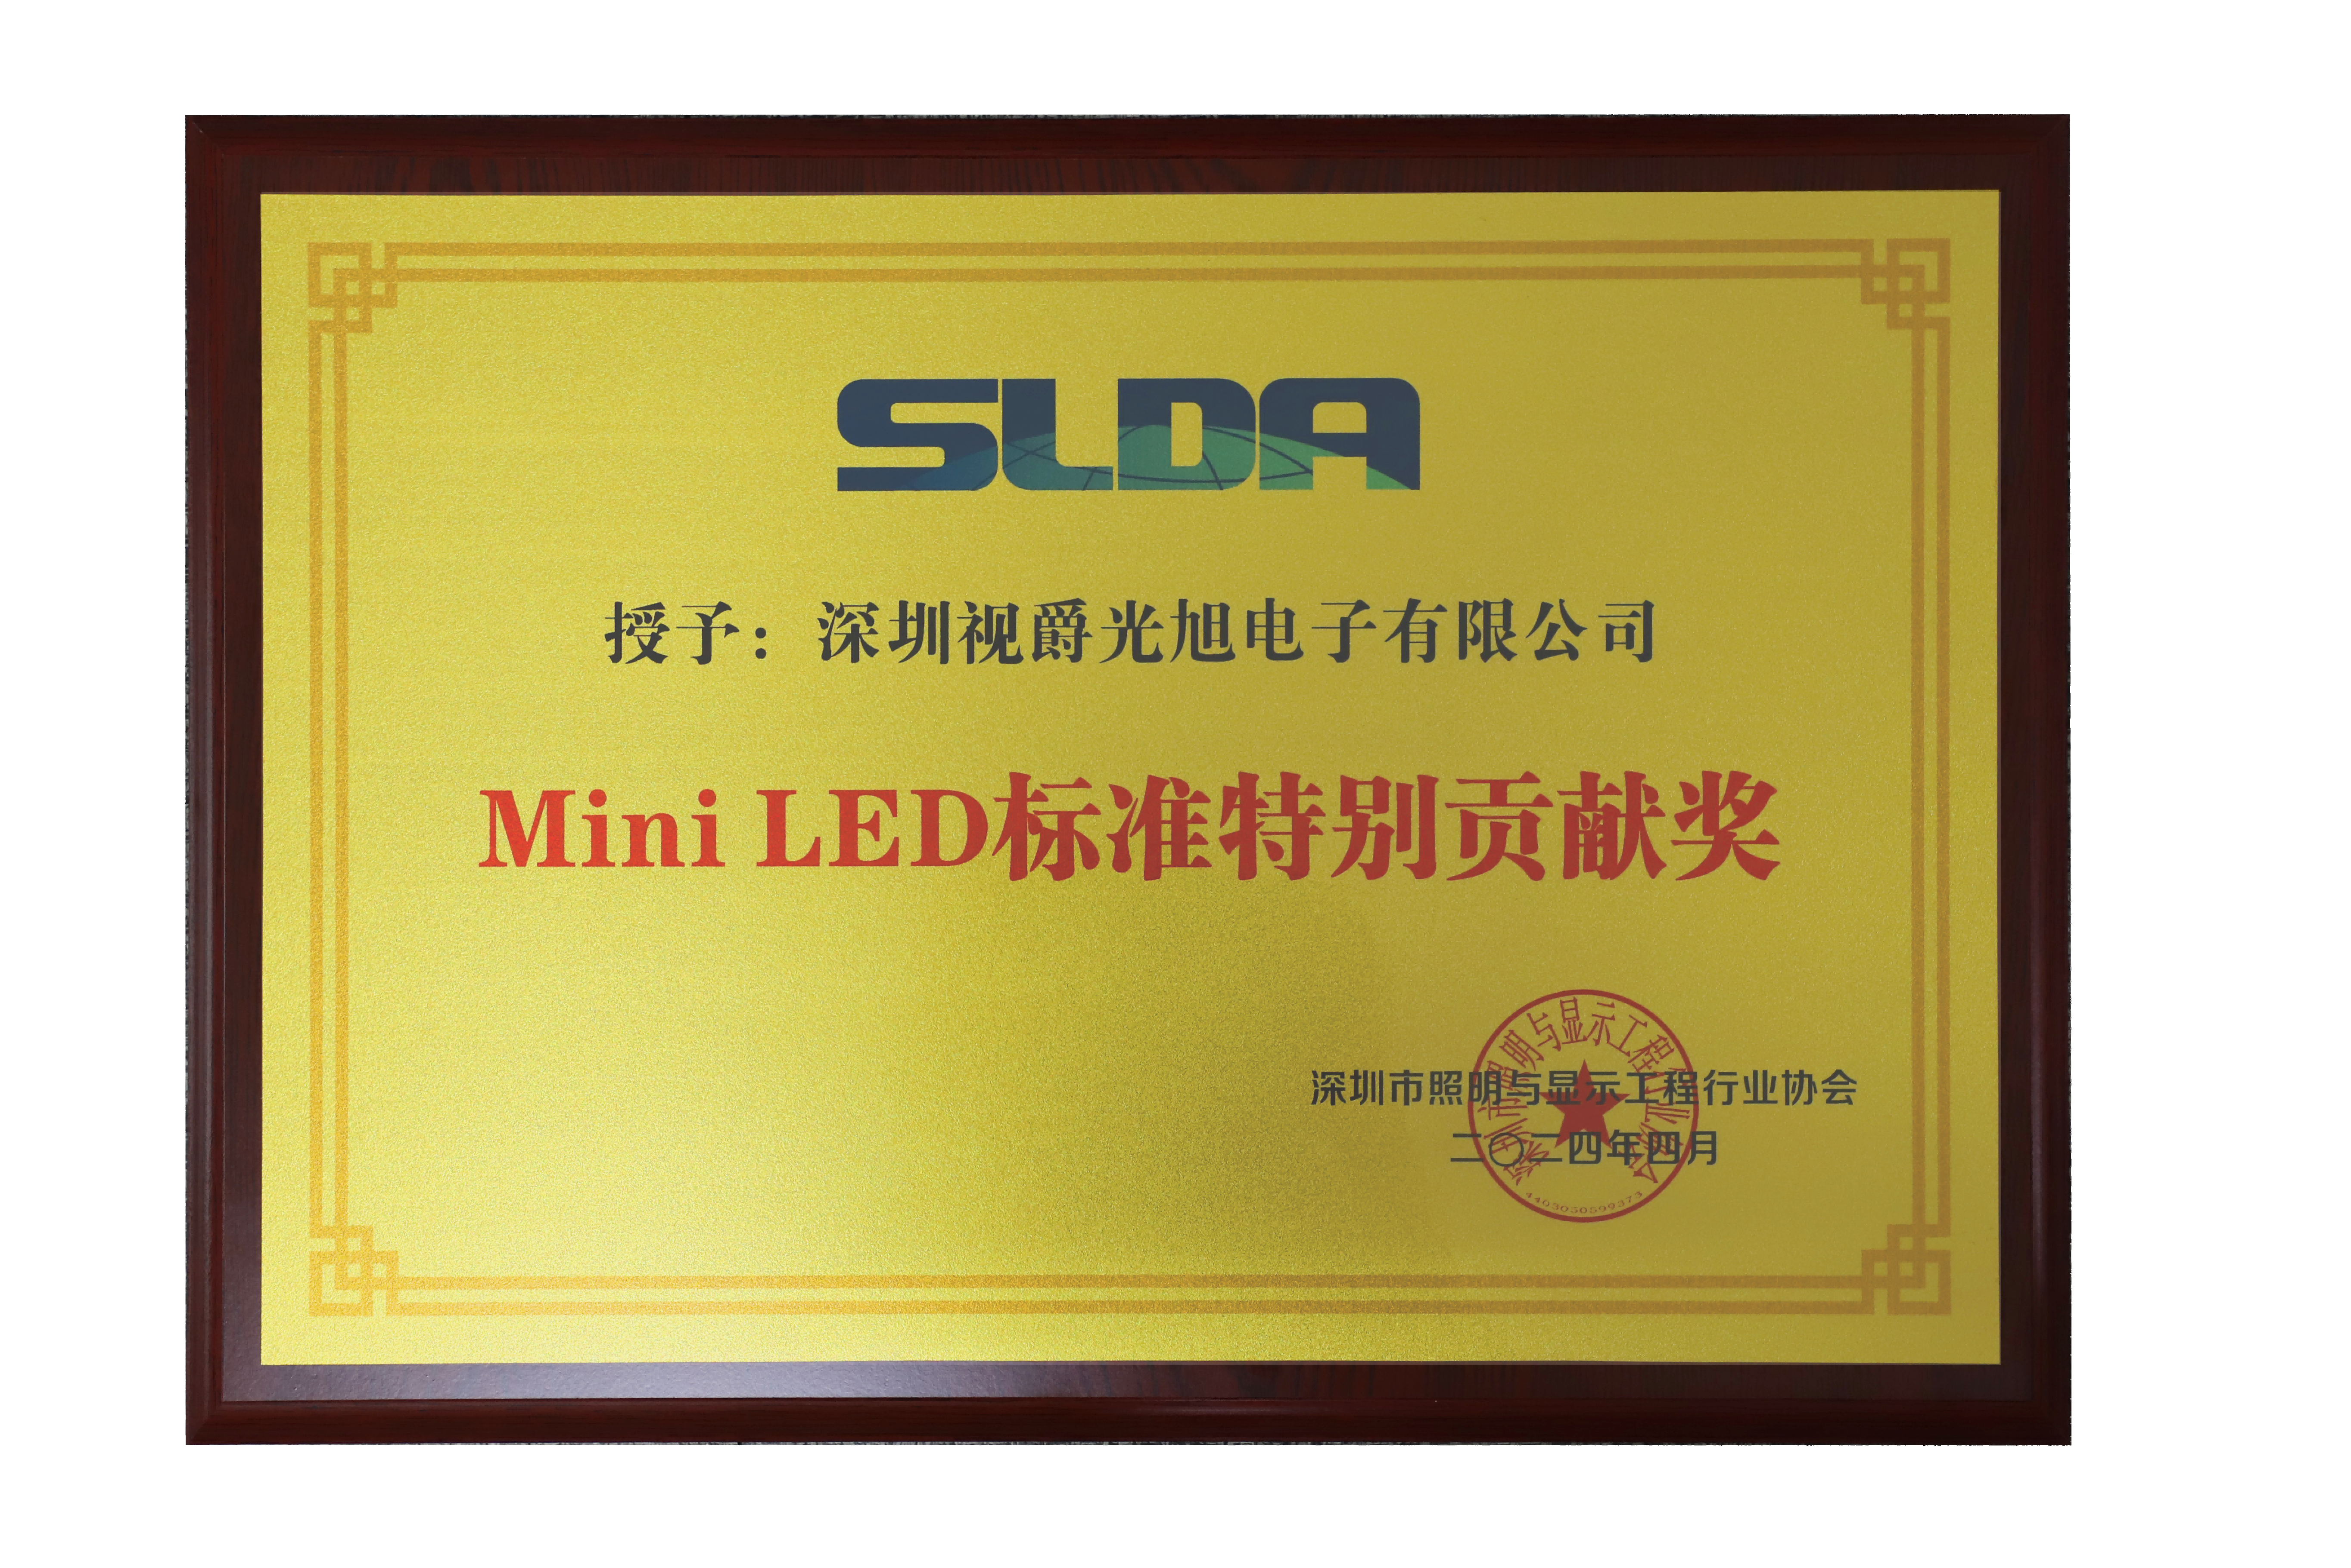 8868体育官方平台Mini LED标准认证特别贡献